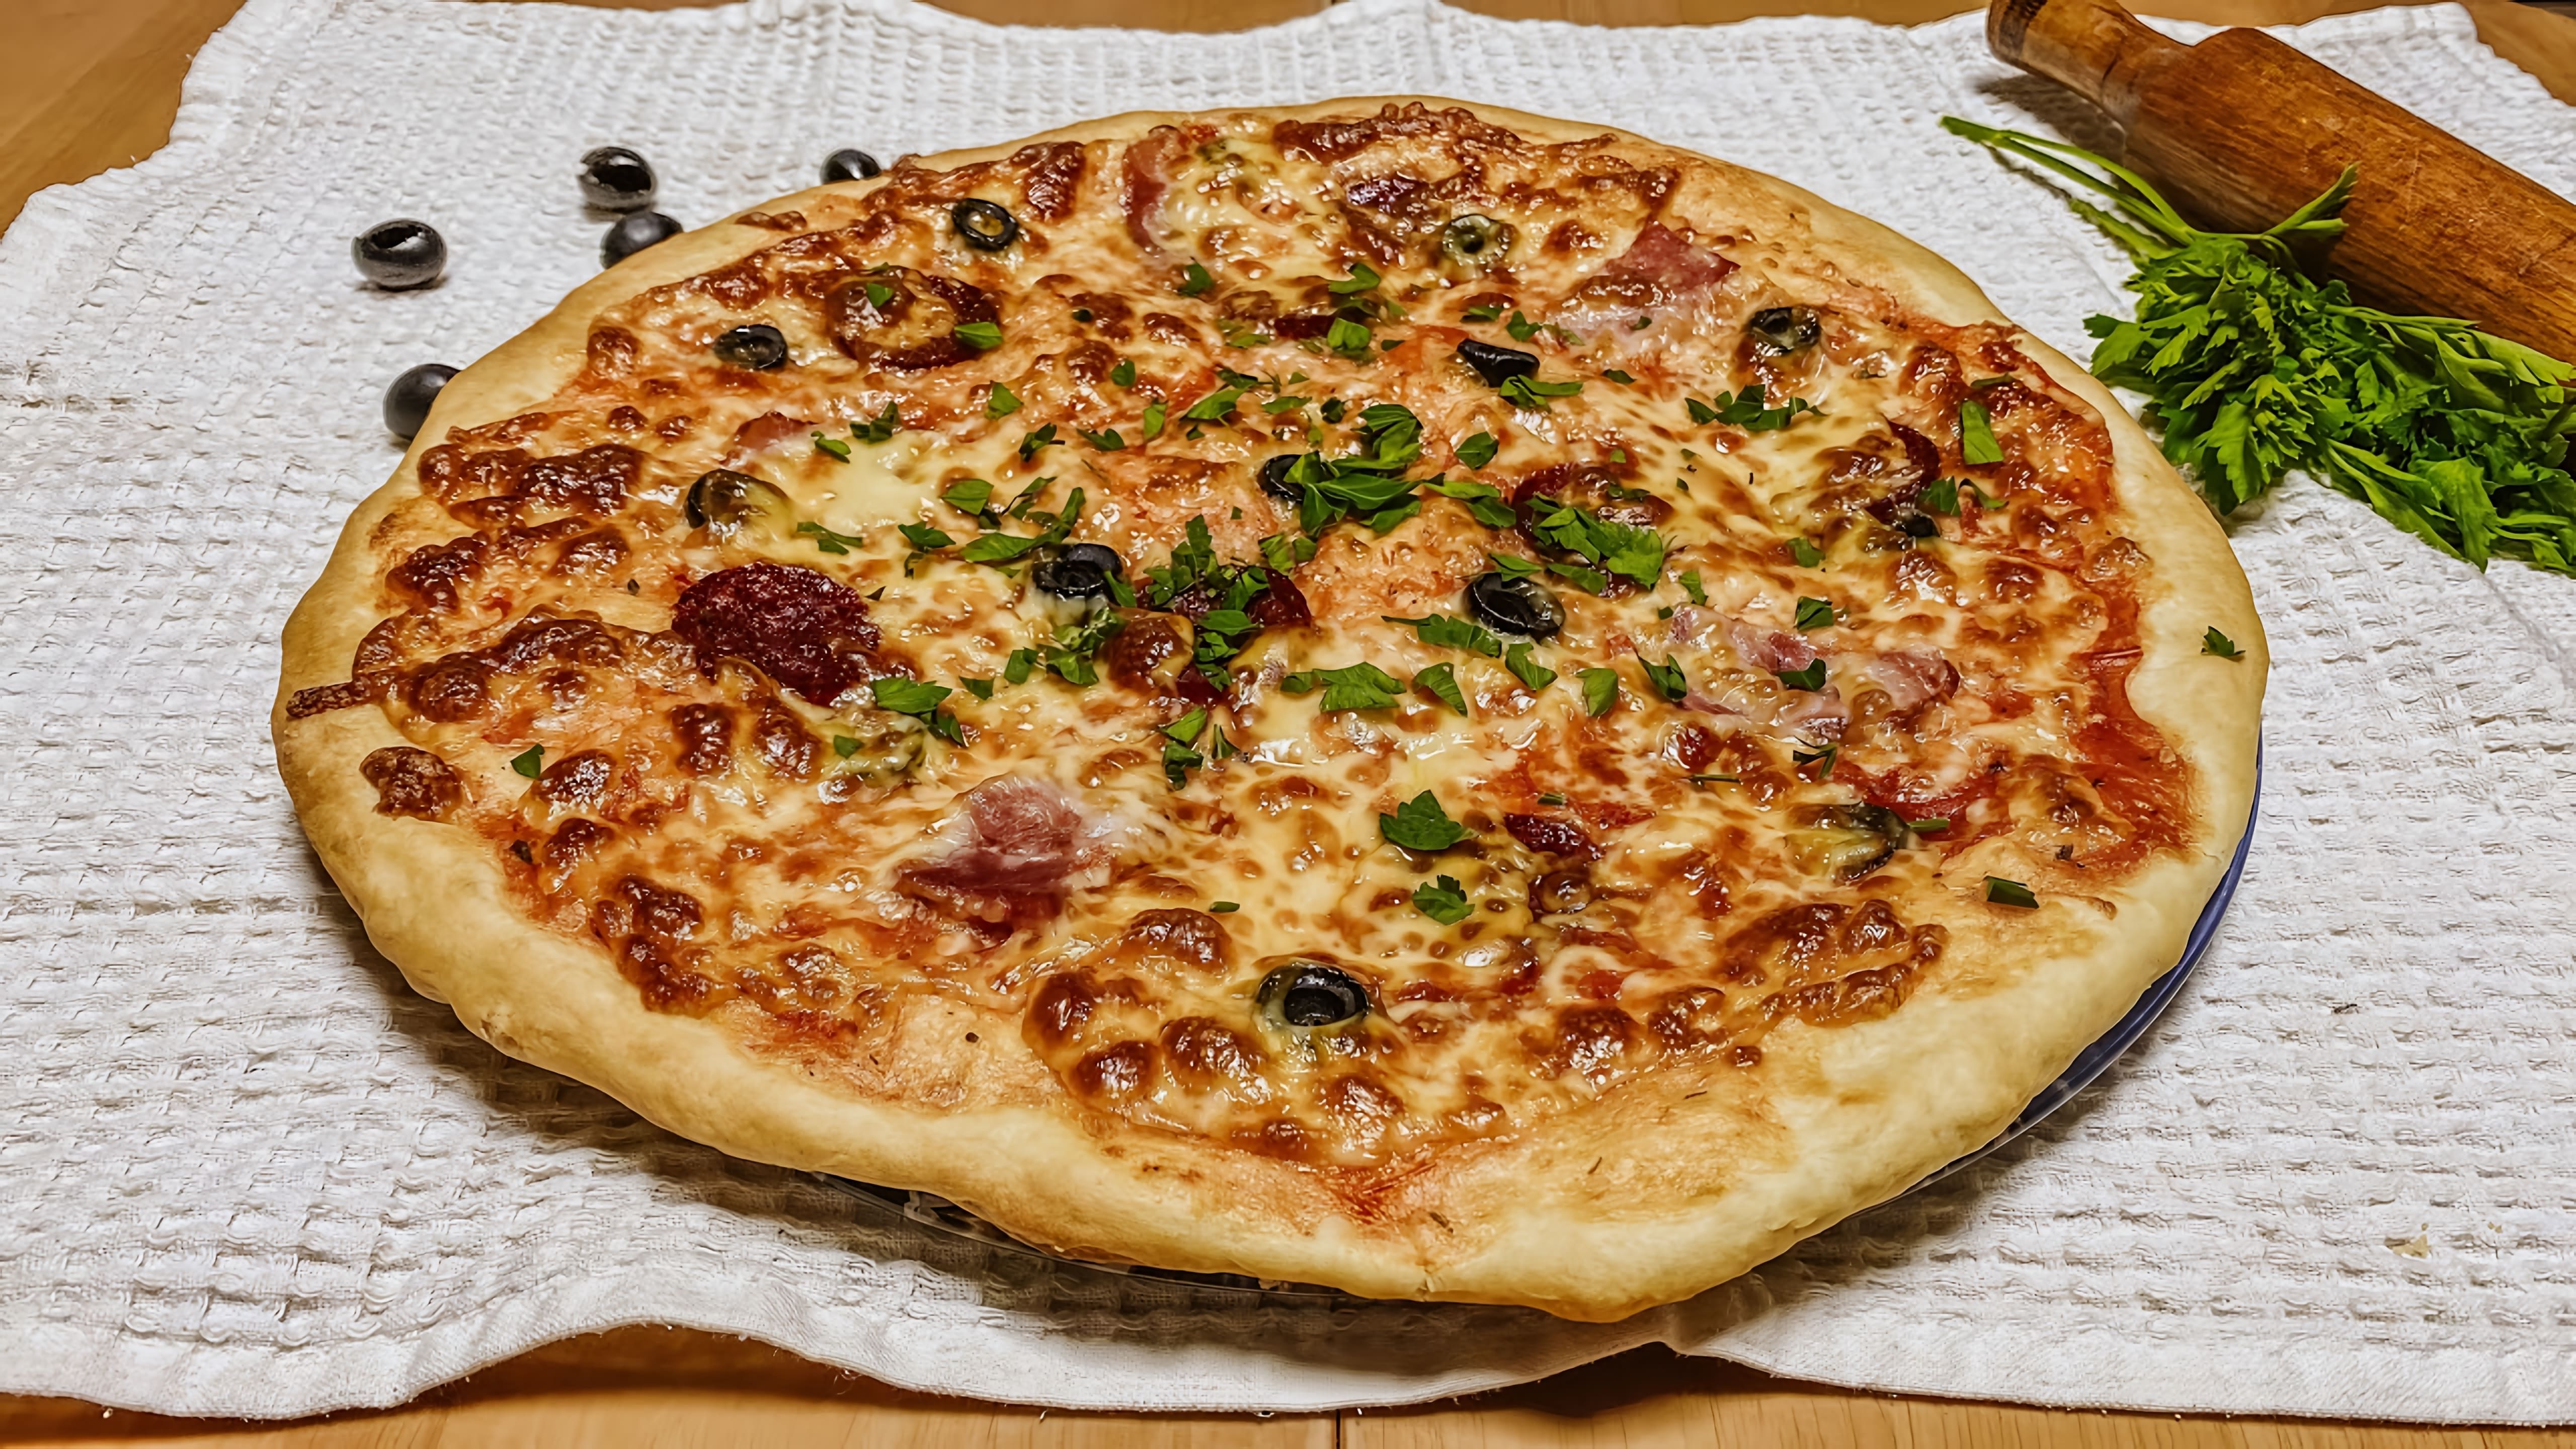 Идеальное ТЕСТО ДЛЯ ПИЦЦЫ/Проверенный рецепт от итальянского шеф-повара

В этом видео-ролике вы увидите, как приготовить идеальное тесто для пиццы по проверенному рецепту от итальянского шеф-повара